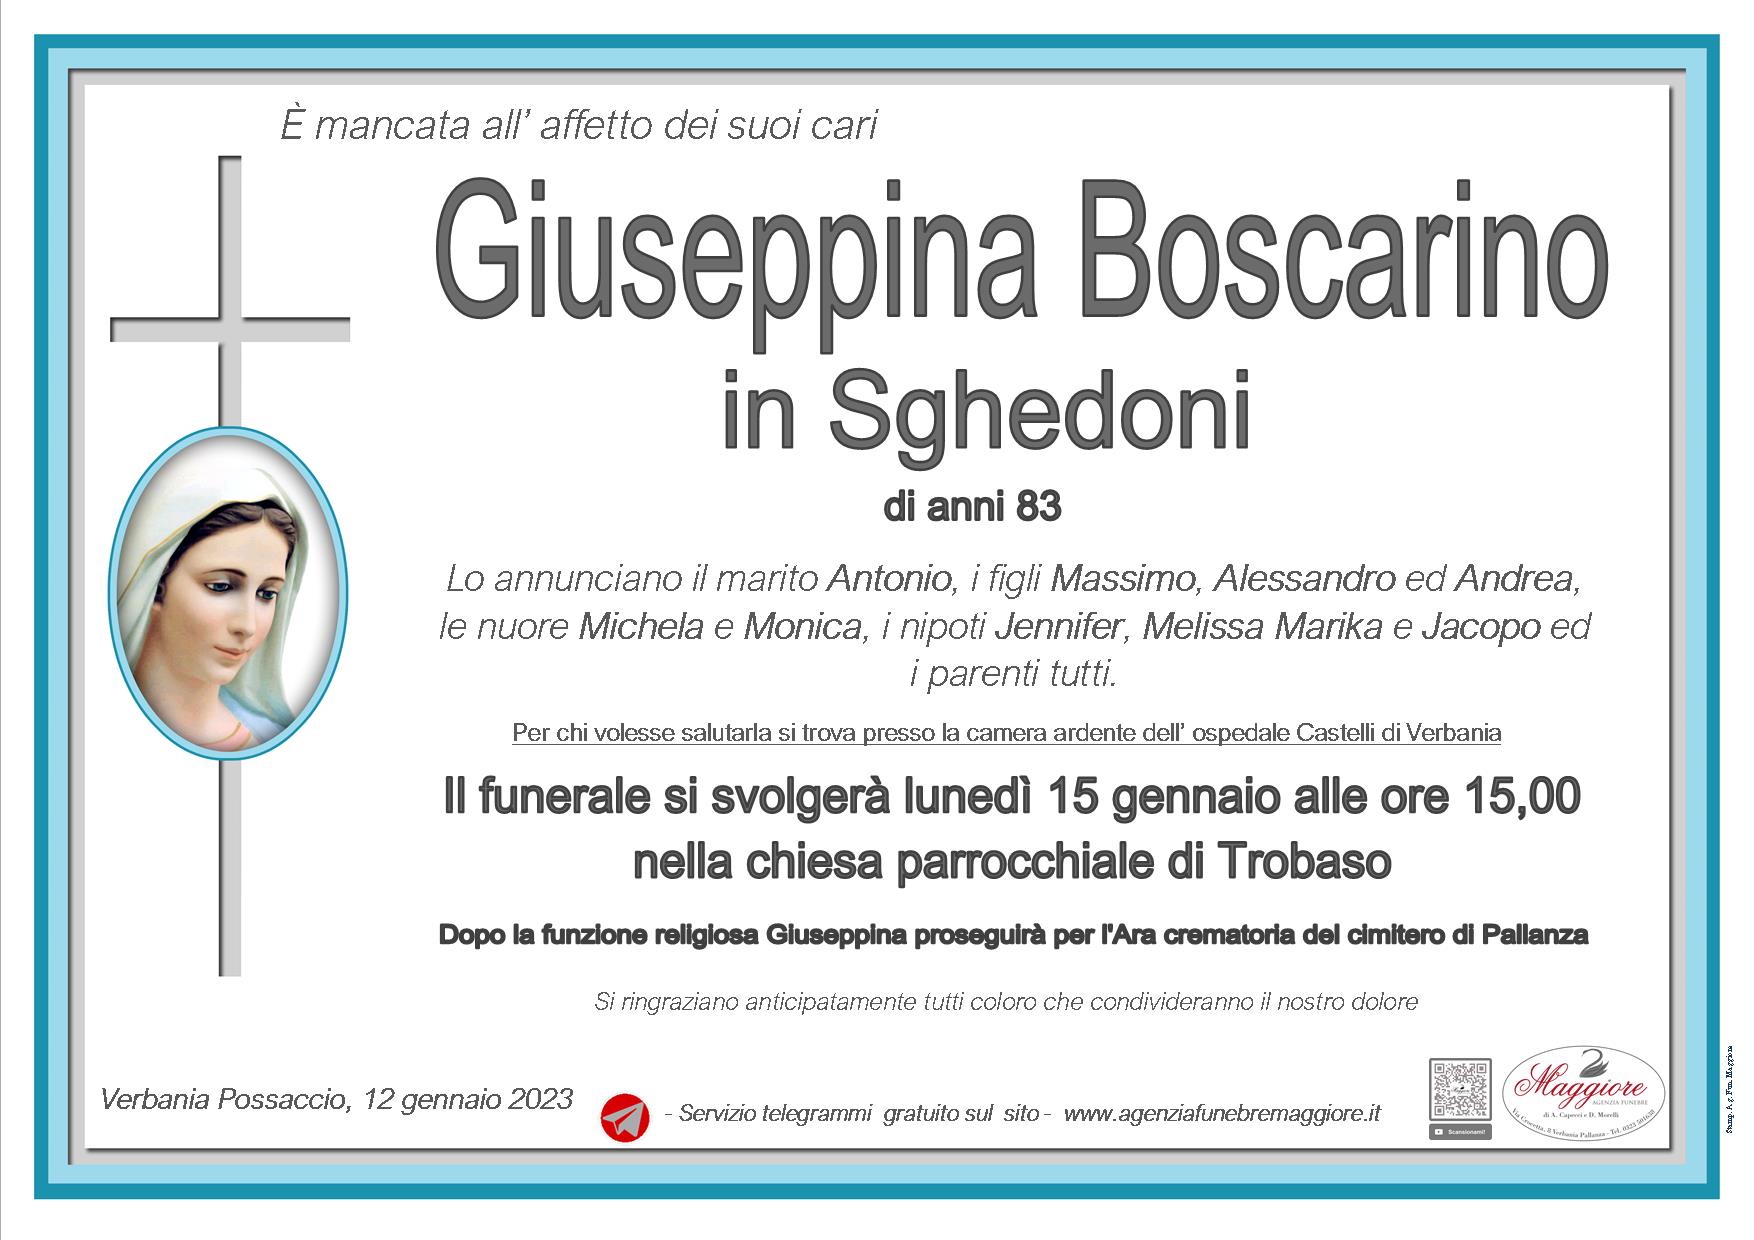 Giuseppina Boscarino in Sghedoni